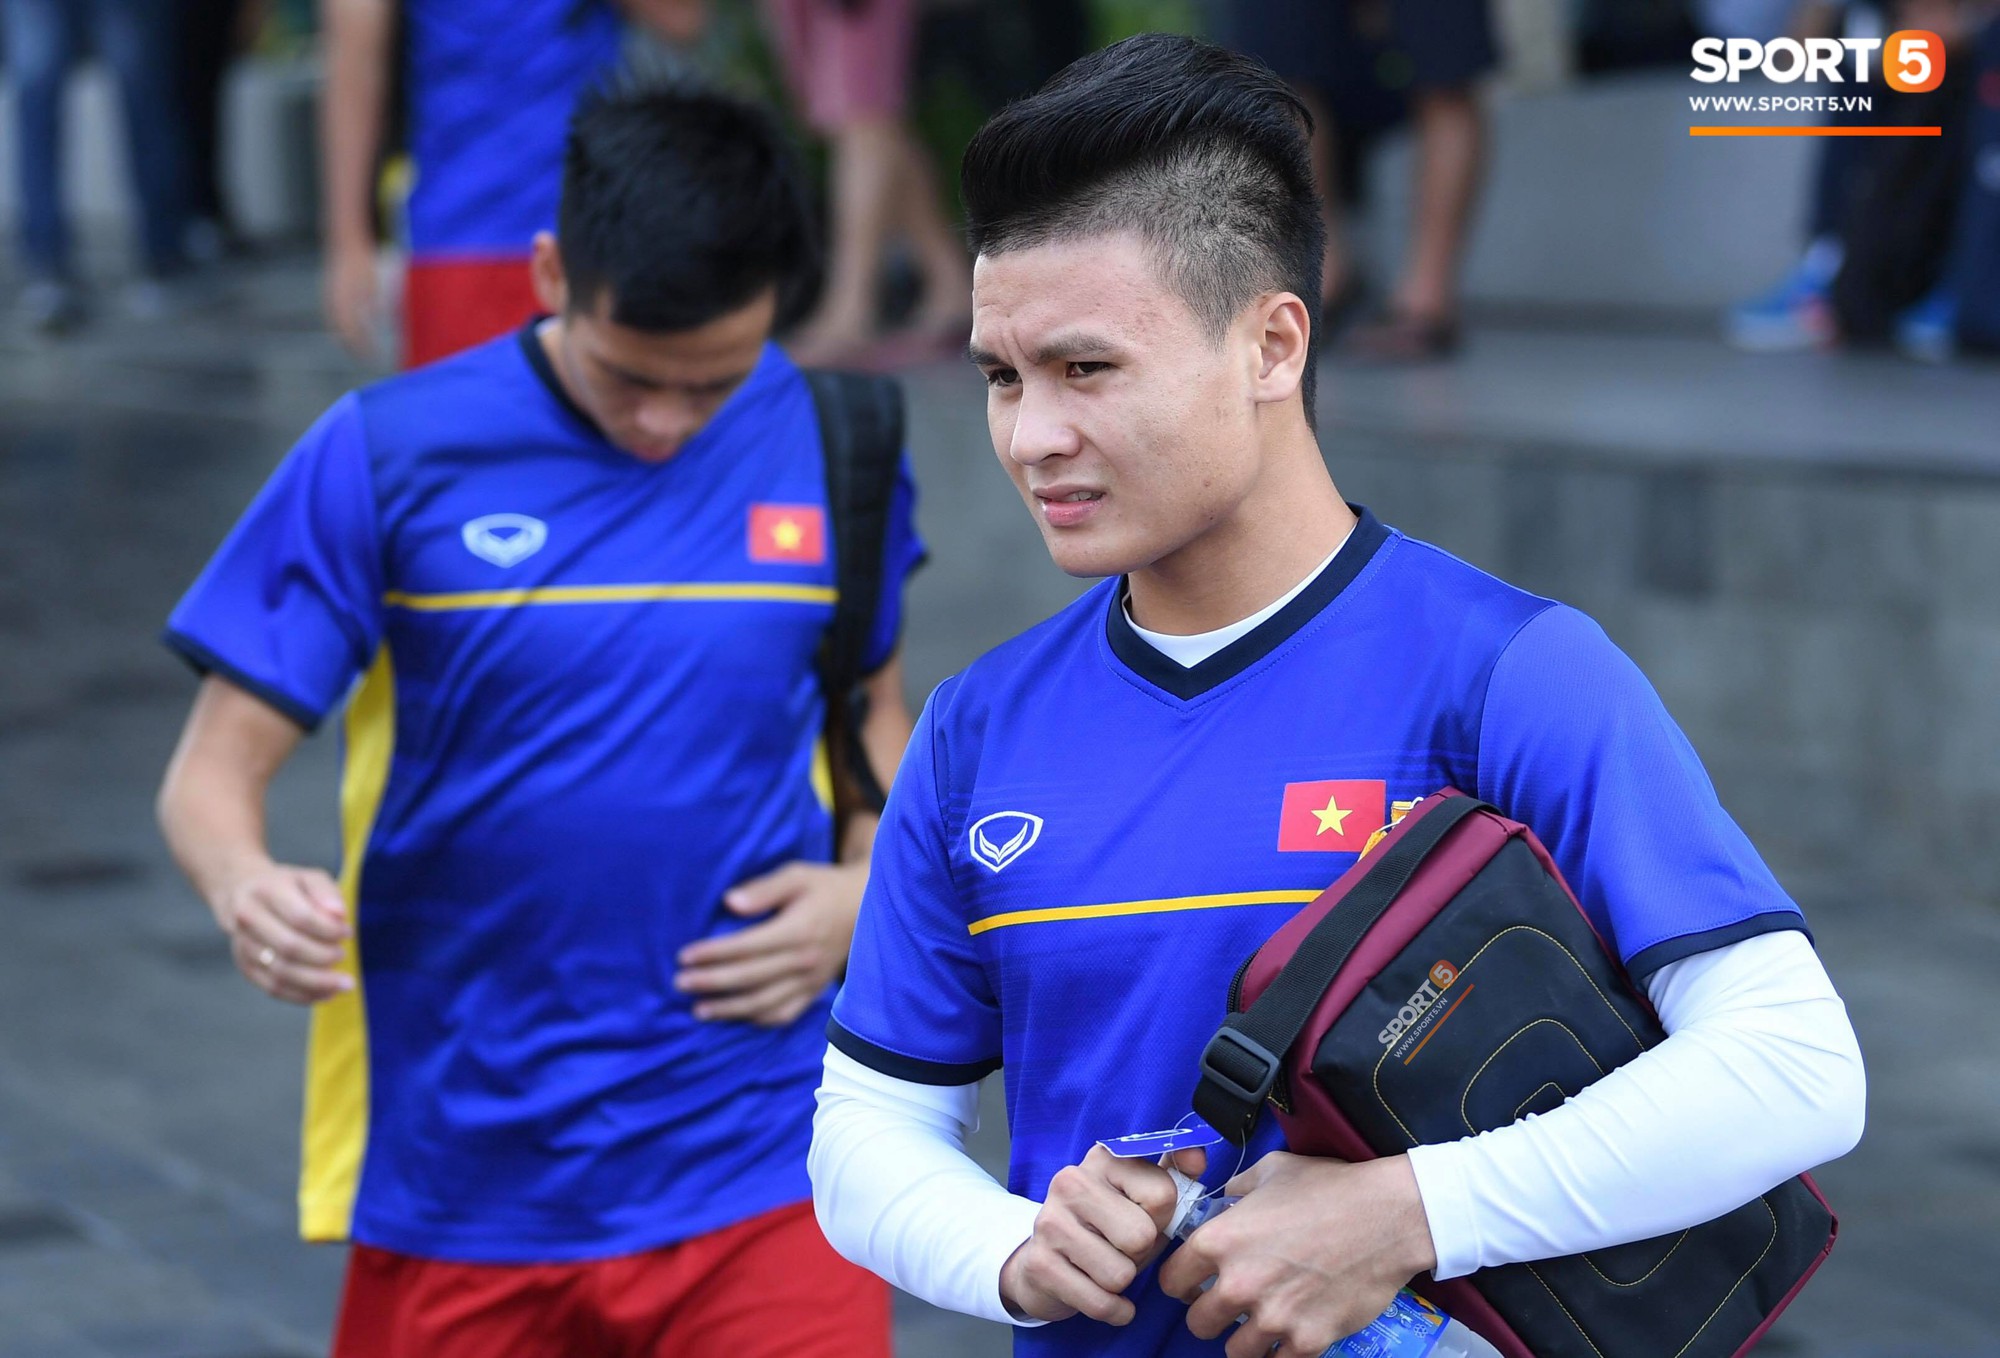 Đội tuyển Olympic Việt Nam thoải mái trước giờ tập luyện - Ảnh 1.